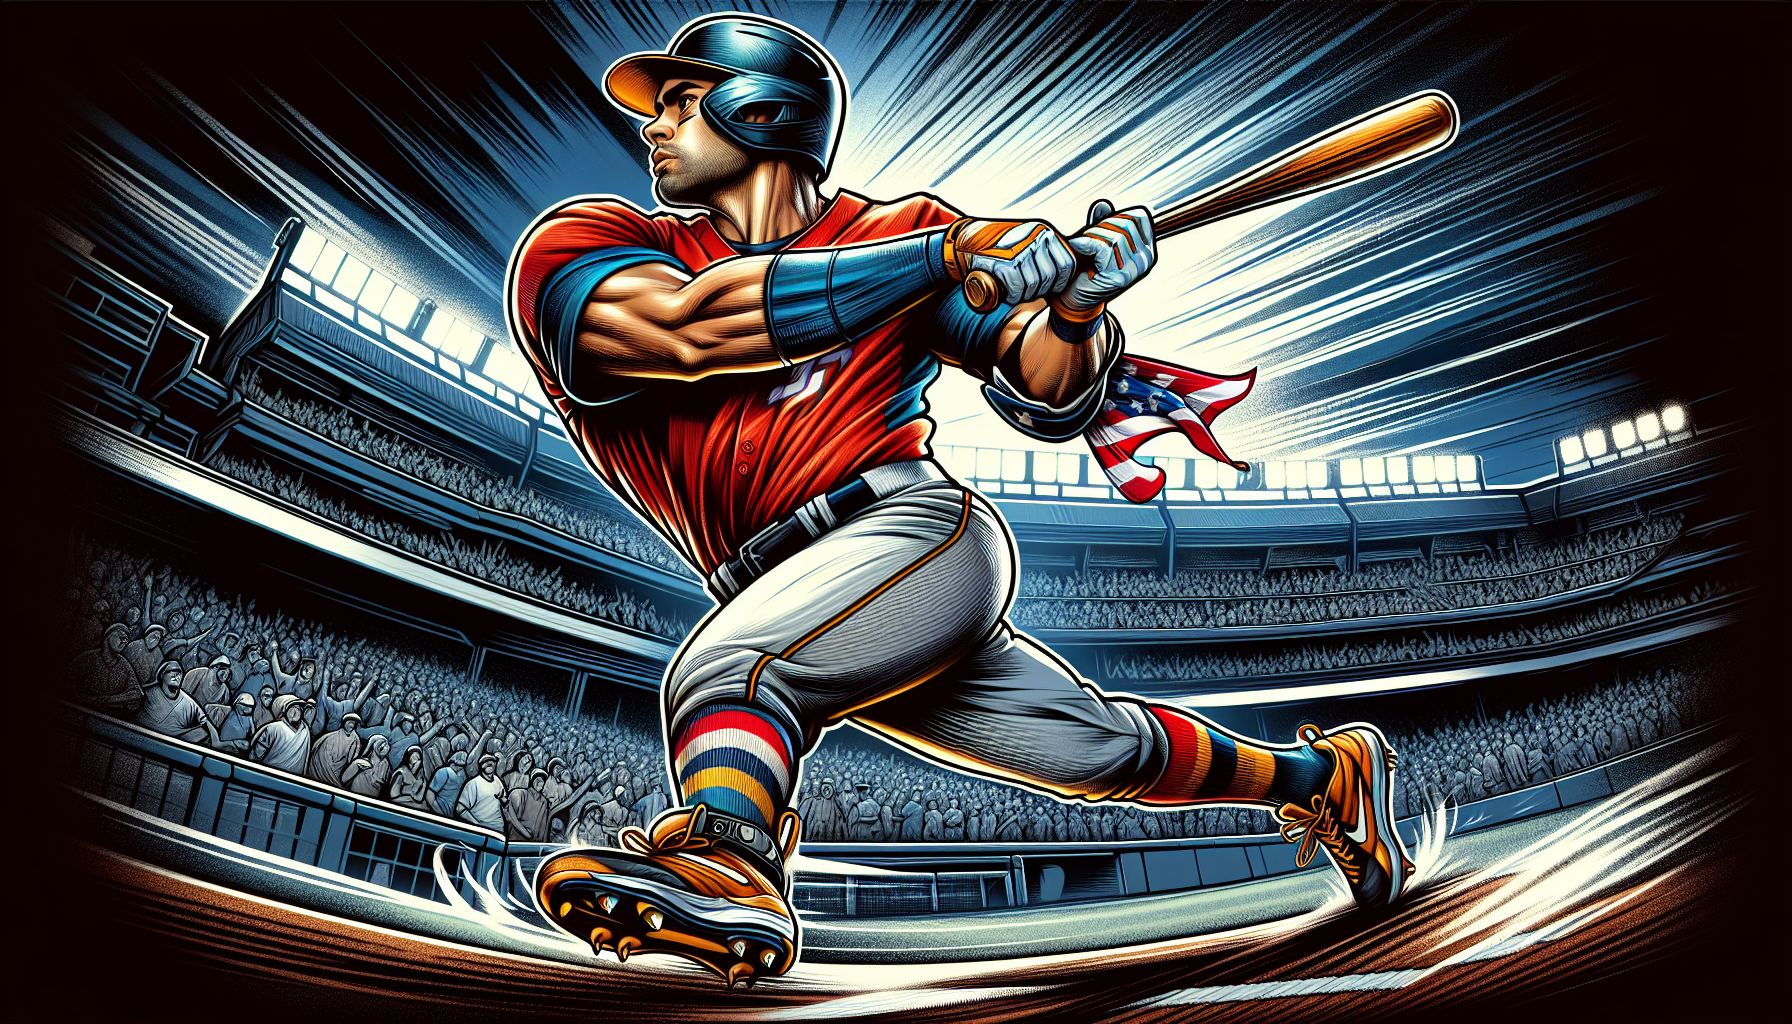 Illustration of baseball player at bat